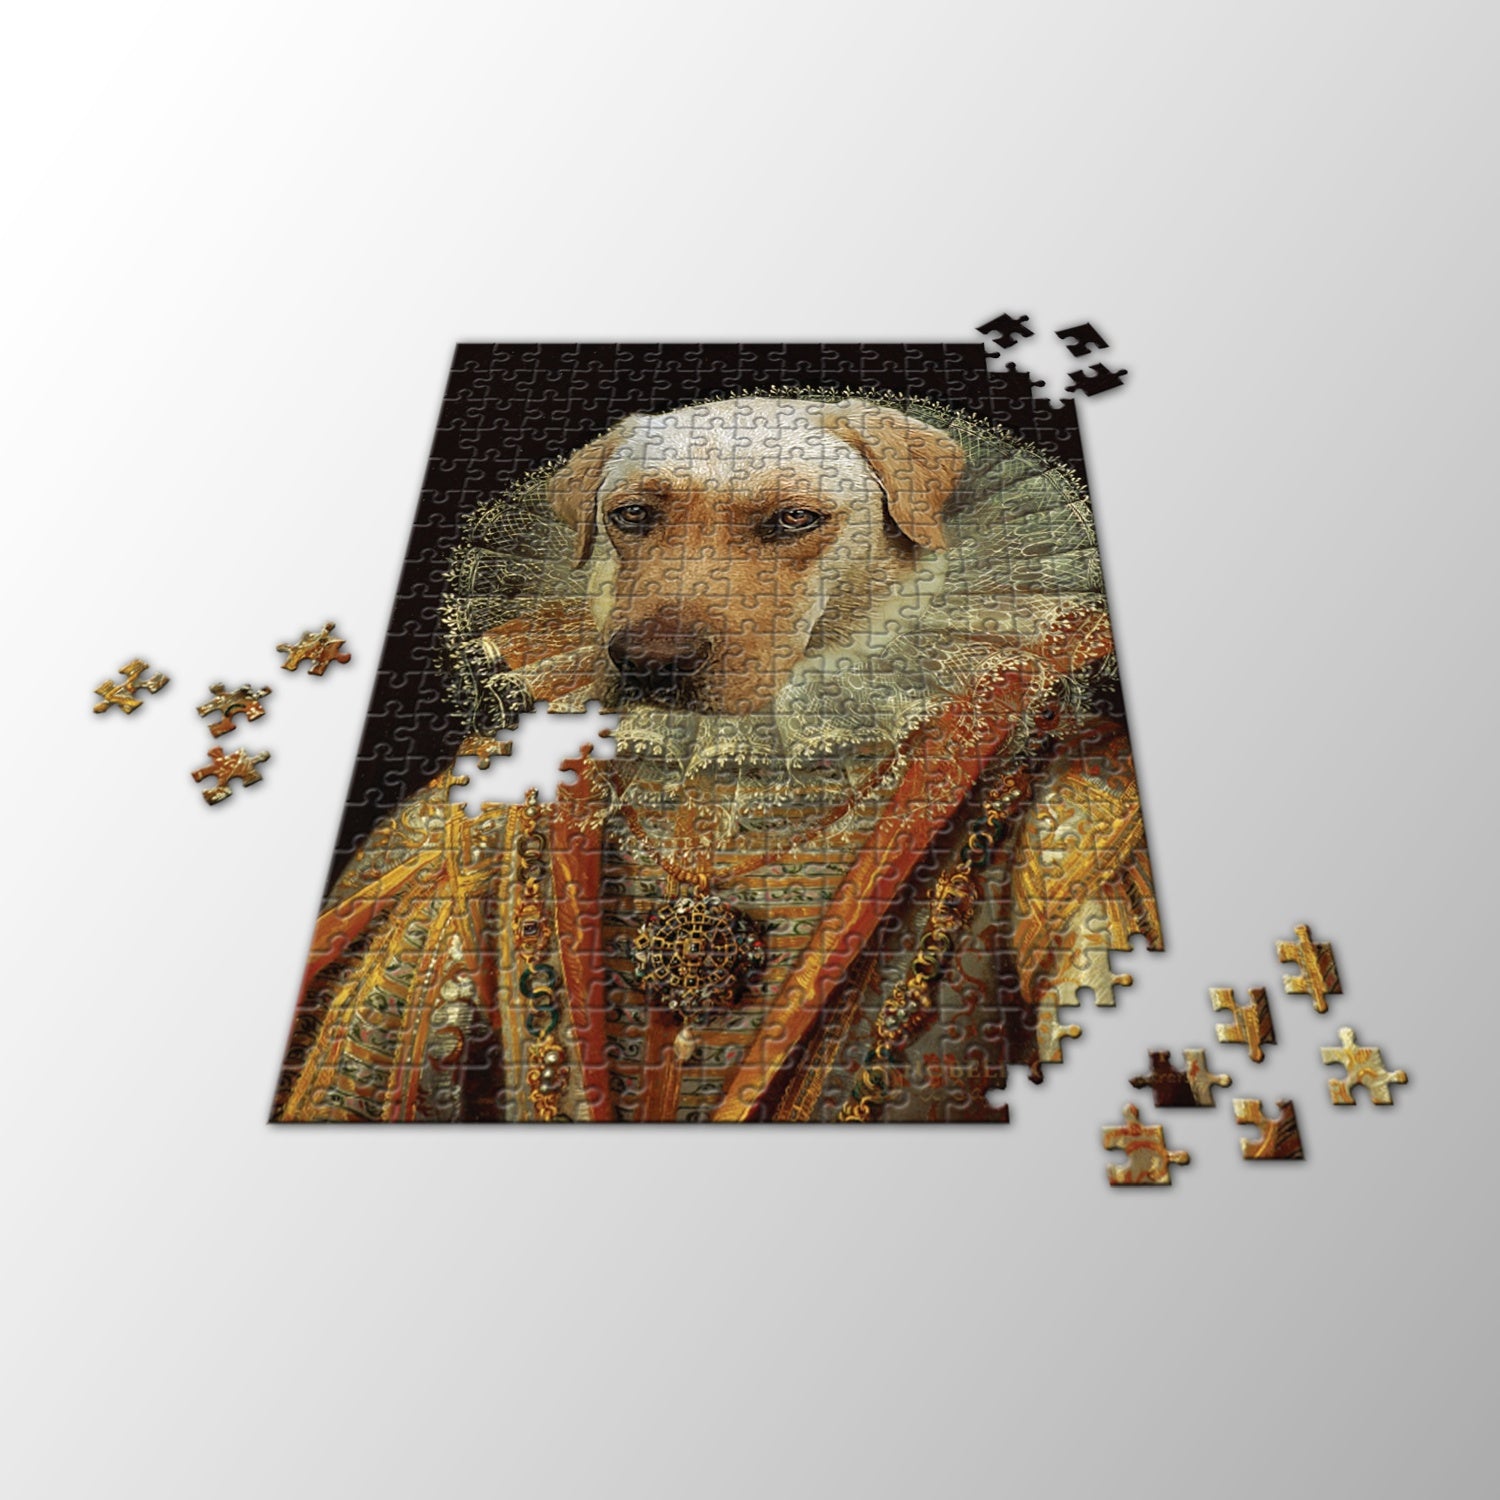 Foto Puzzle von einem Hund als Geschenk